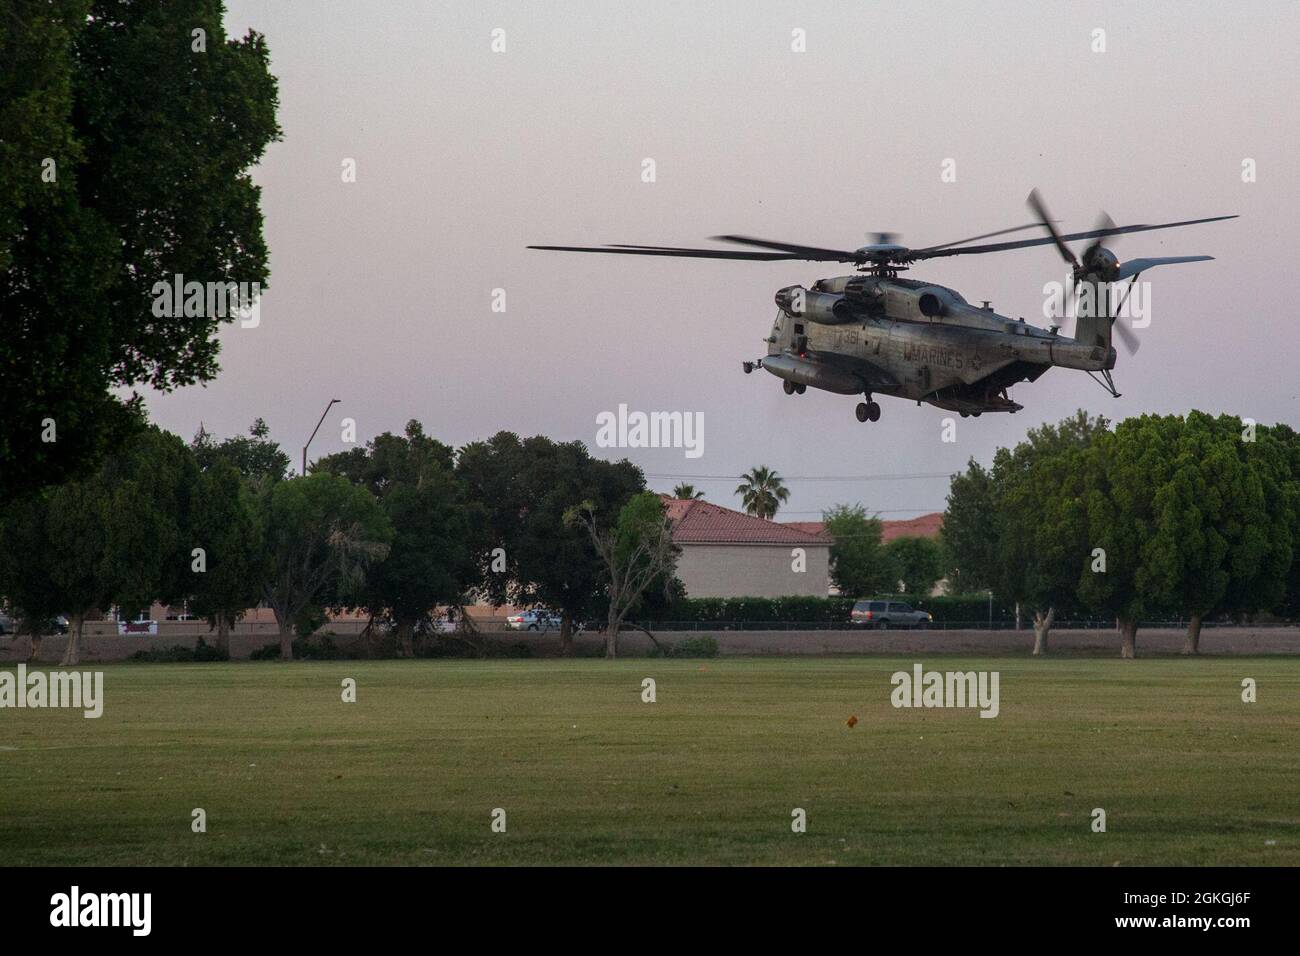 Un US Marine corps CH-53E Super Stallion, affecté à l'Escadron d'armes et de tactiques de l'aviation maritime un (MAWTS-1), prend son envol pendant l'assaut tactique de soutien 3 (AST-3), l'exercice d'aide humanitaire étrangère, à l'appui d'armes et de tactiques d'instructeur (WTI) cours 2-21, au parc Kiwanis, à Yuma, Arizona, le 16 avril, 2021. WTI est un événement de formation de sept semaines organisé par MAWTS-1, offrant une formation tactique avancée normalisée et une certification des qualifications d'instructeur d'unité pour soutenir la formation et l'état de préparation de l'aviation maritime, et aide à développer et à employer des armes et des tactiques d'aviation. Banque D'Images